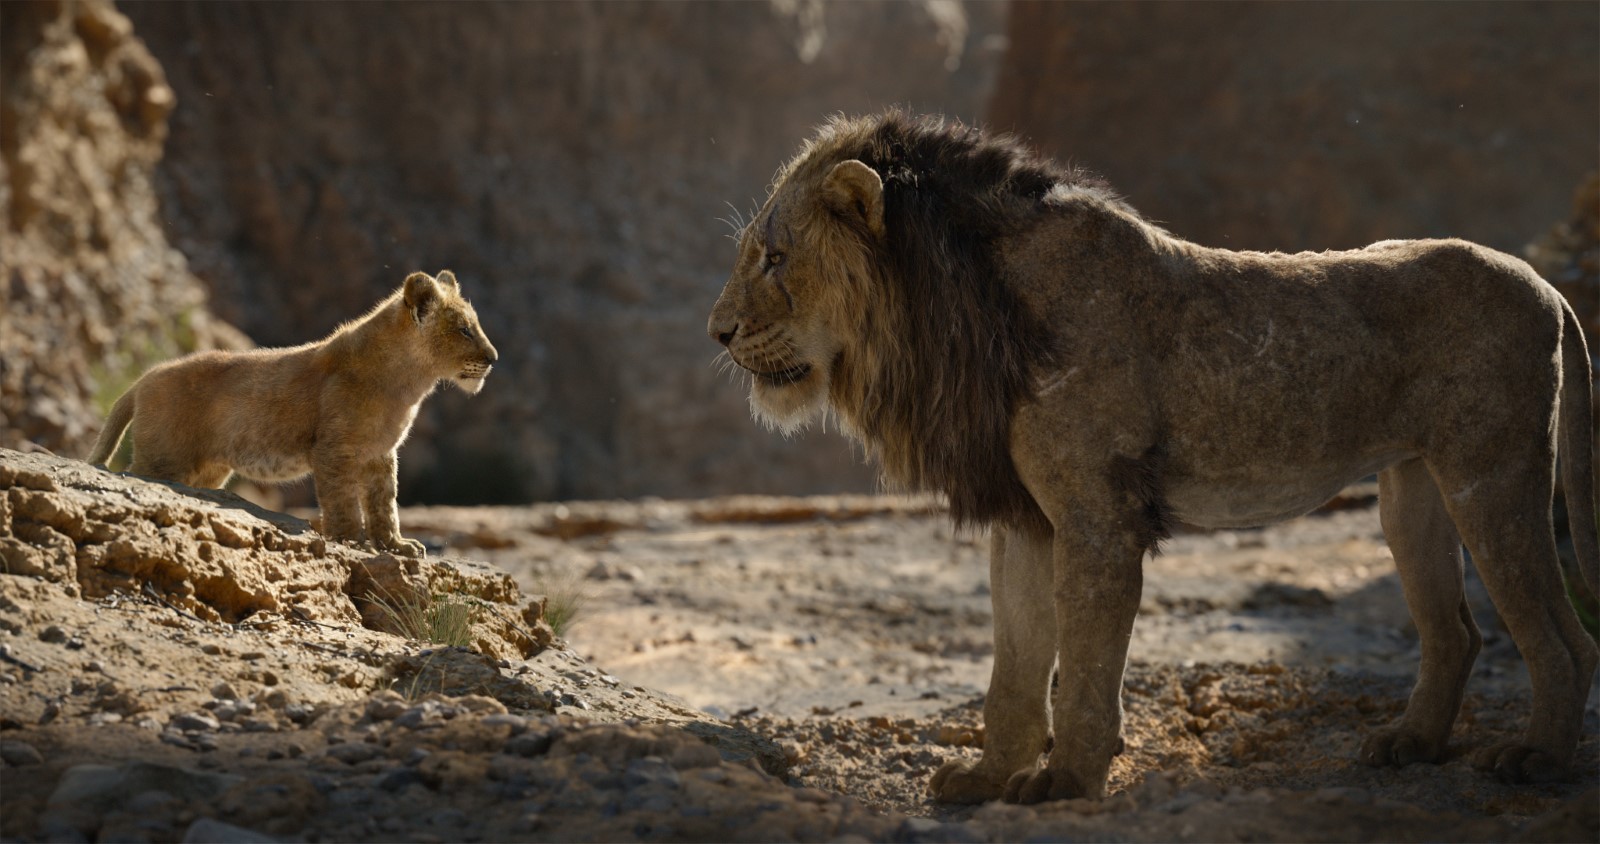 Le Roi Lion film critique